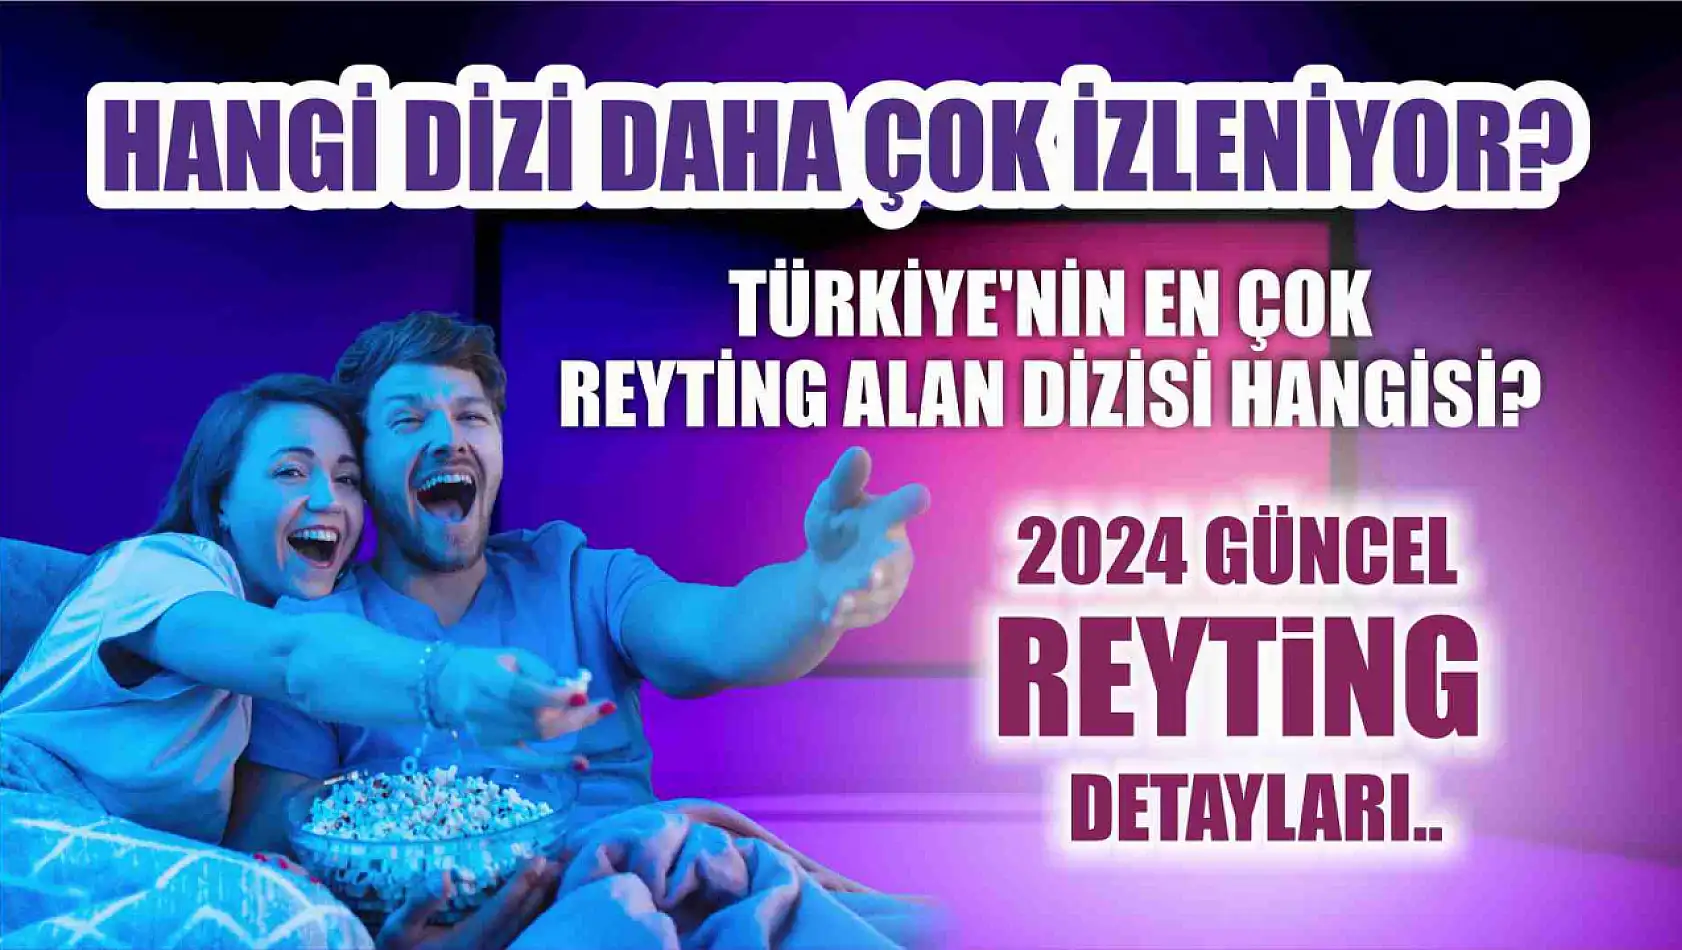 Türkiye'nin en çok reyting alan dizisi hangisi? Hangi dizi daha çok izleniyor? 2024 güncel reyting detaylar..